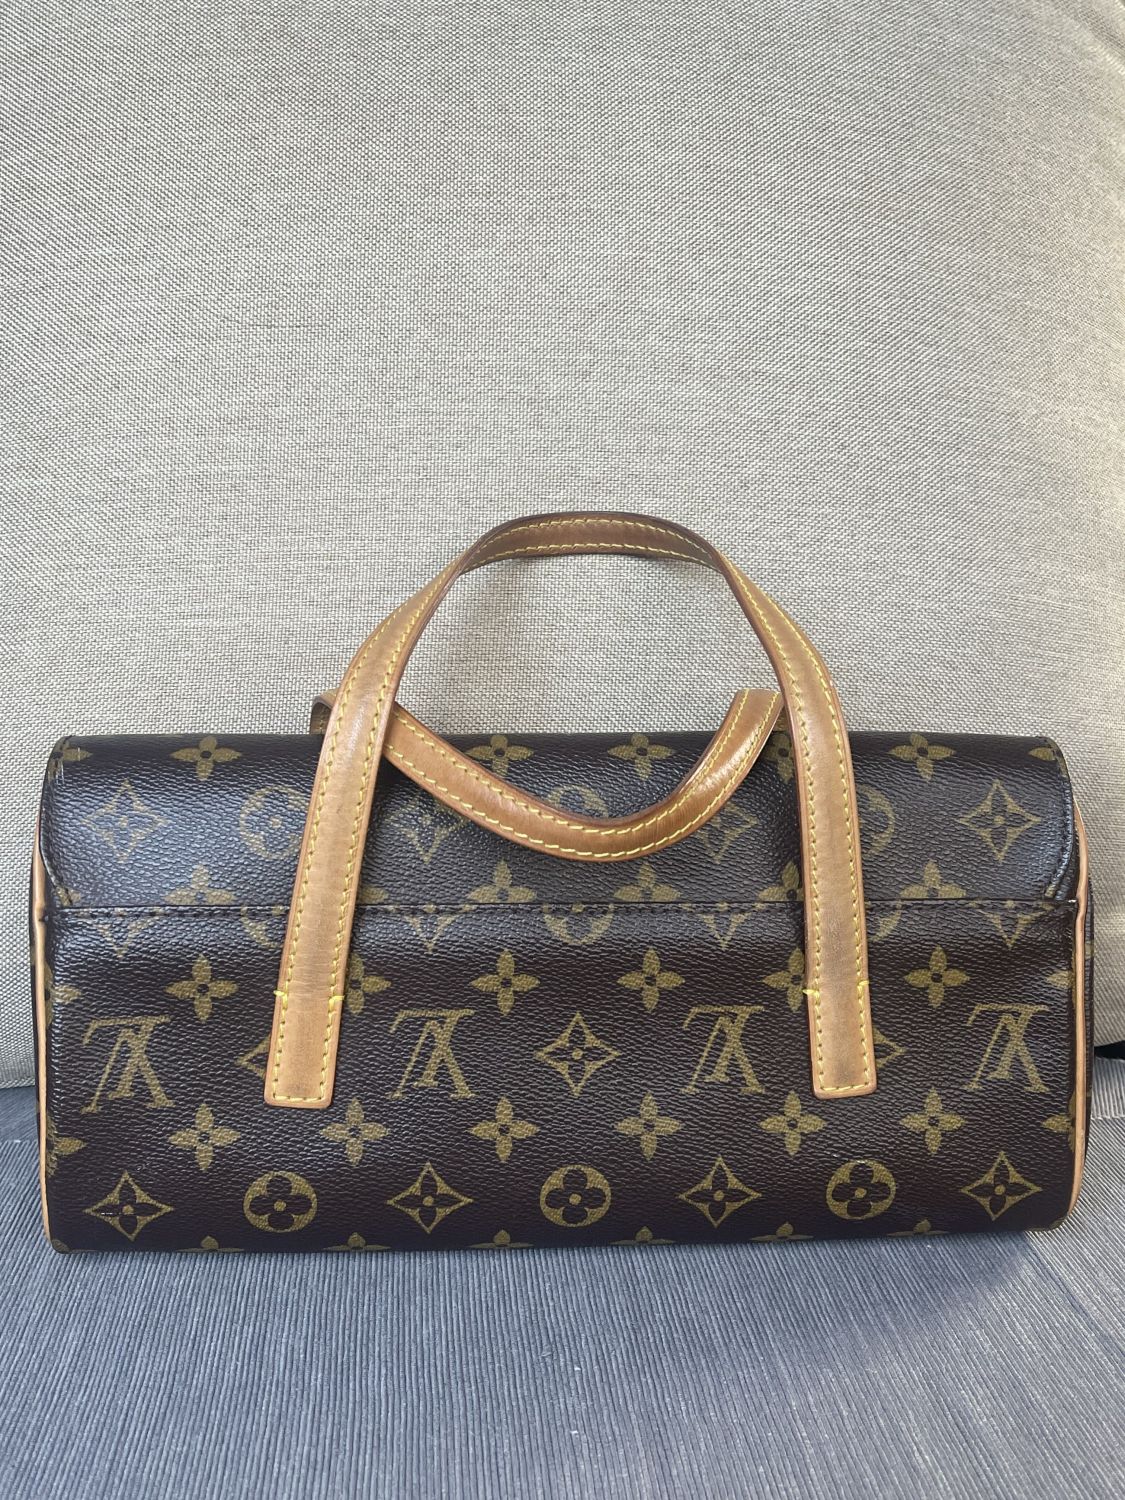 Louis Vuitton Sonatine Handbag Monogram